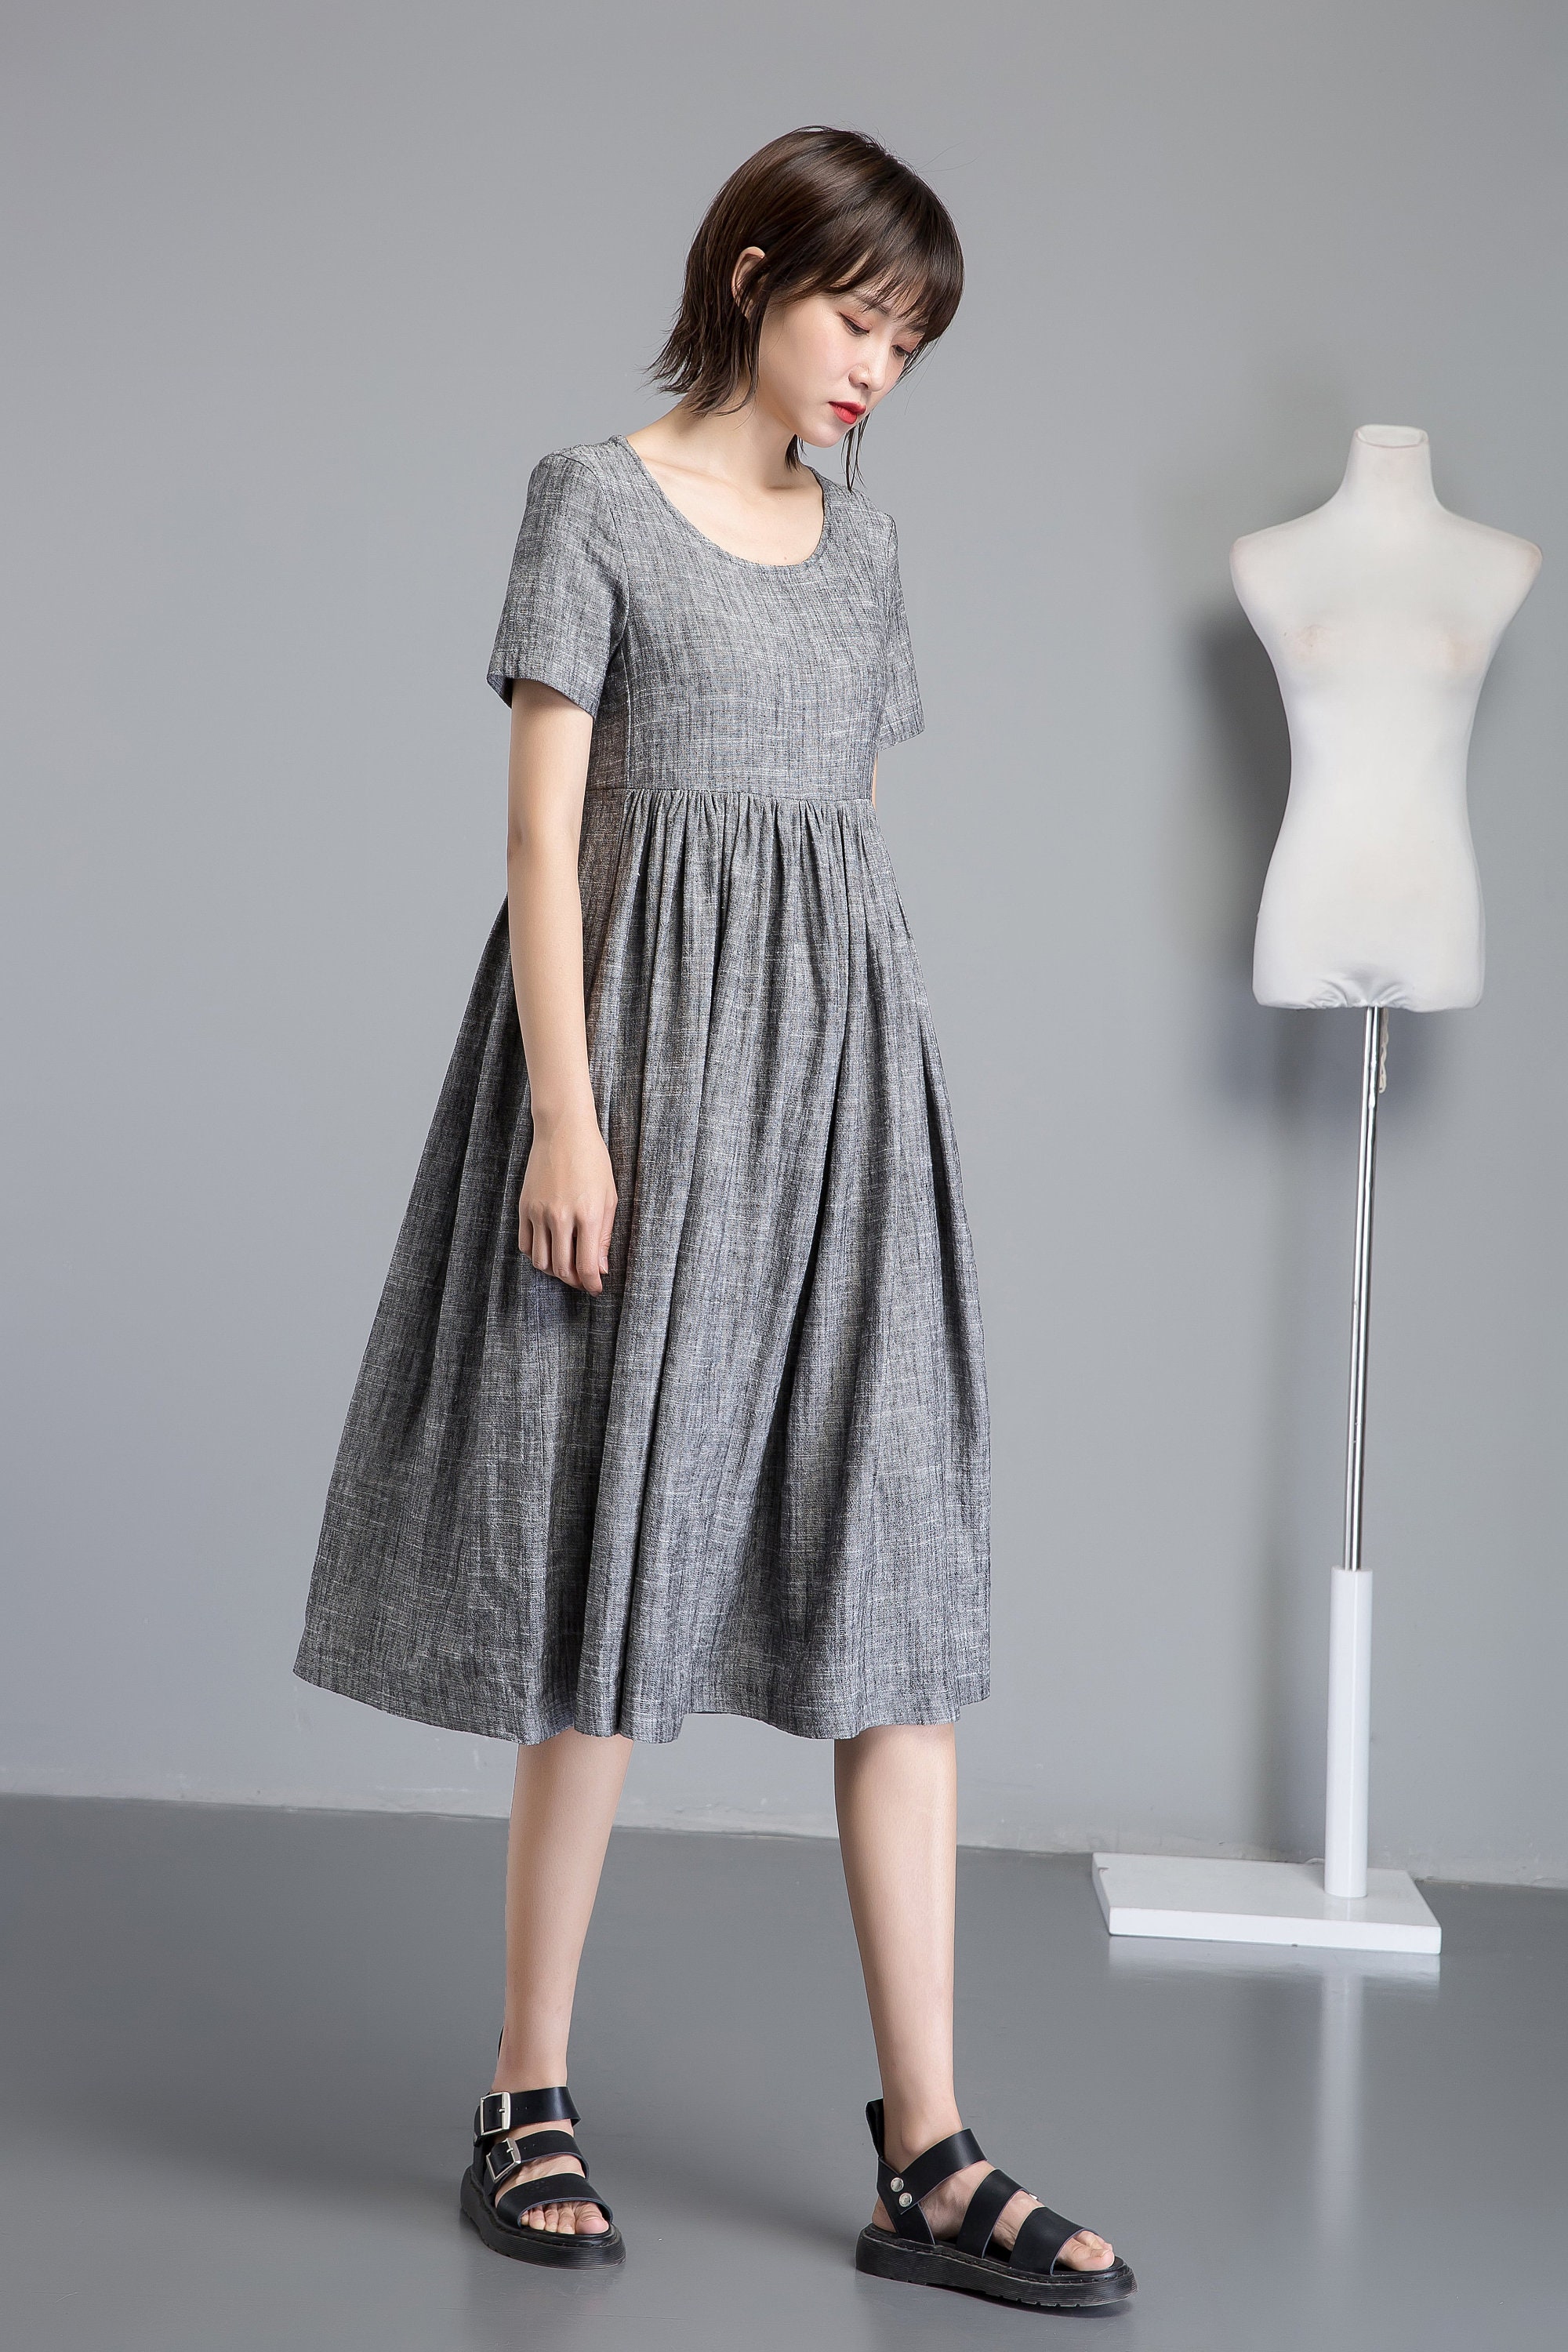 Simple linen dress midi linen dress summer linen dress | Etsy